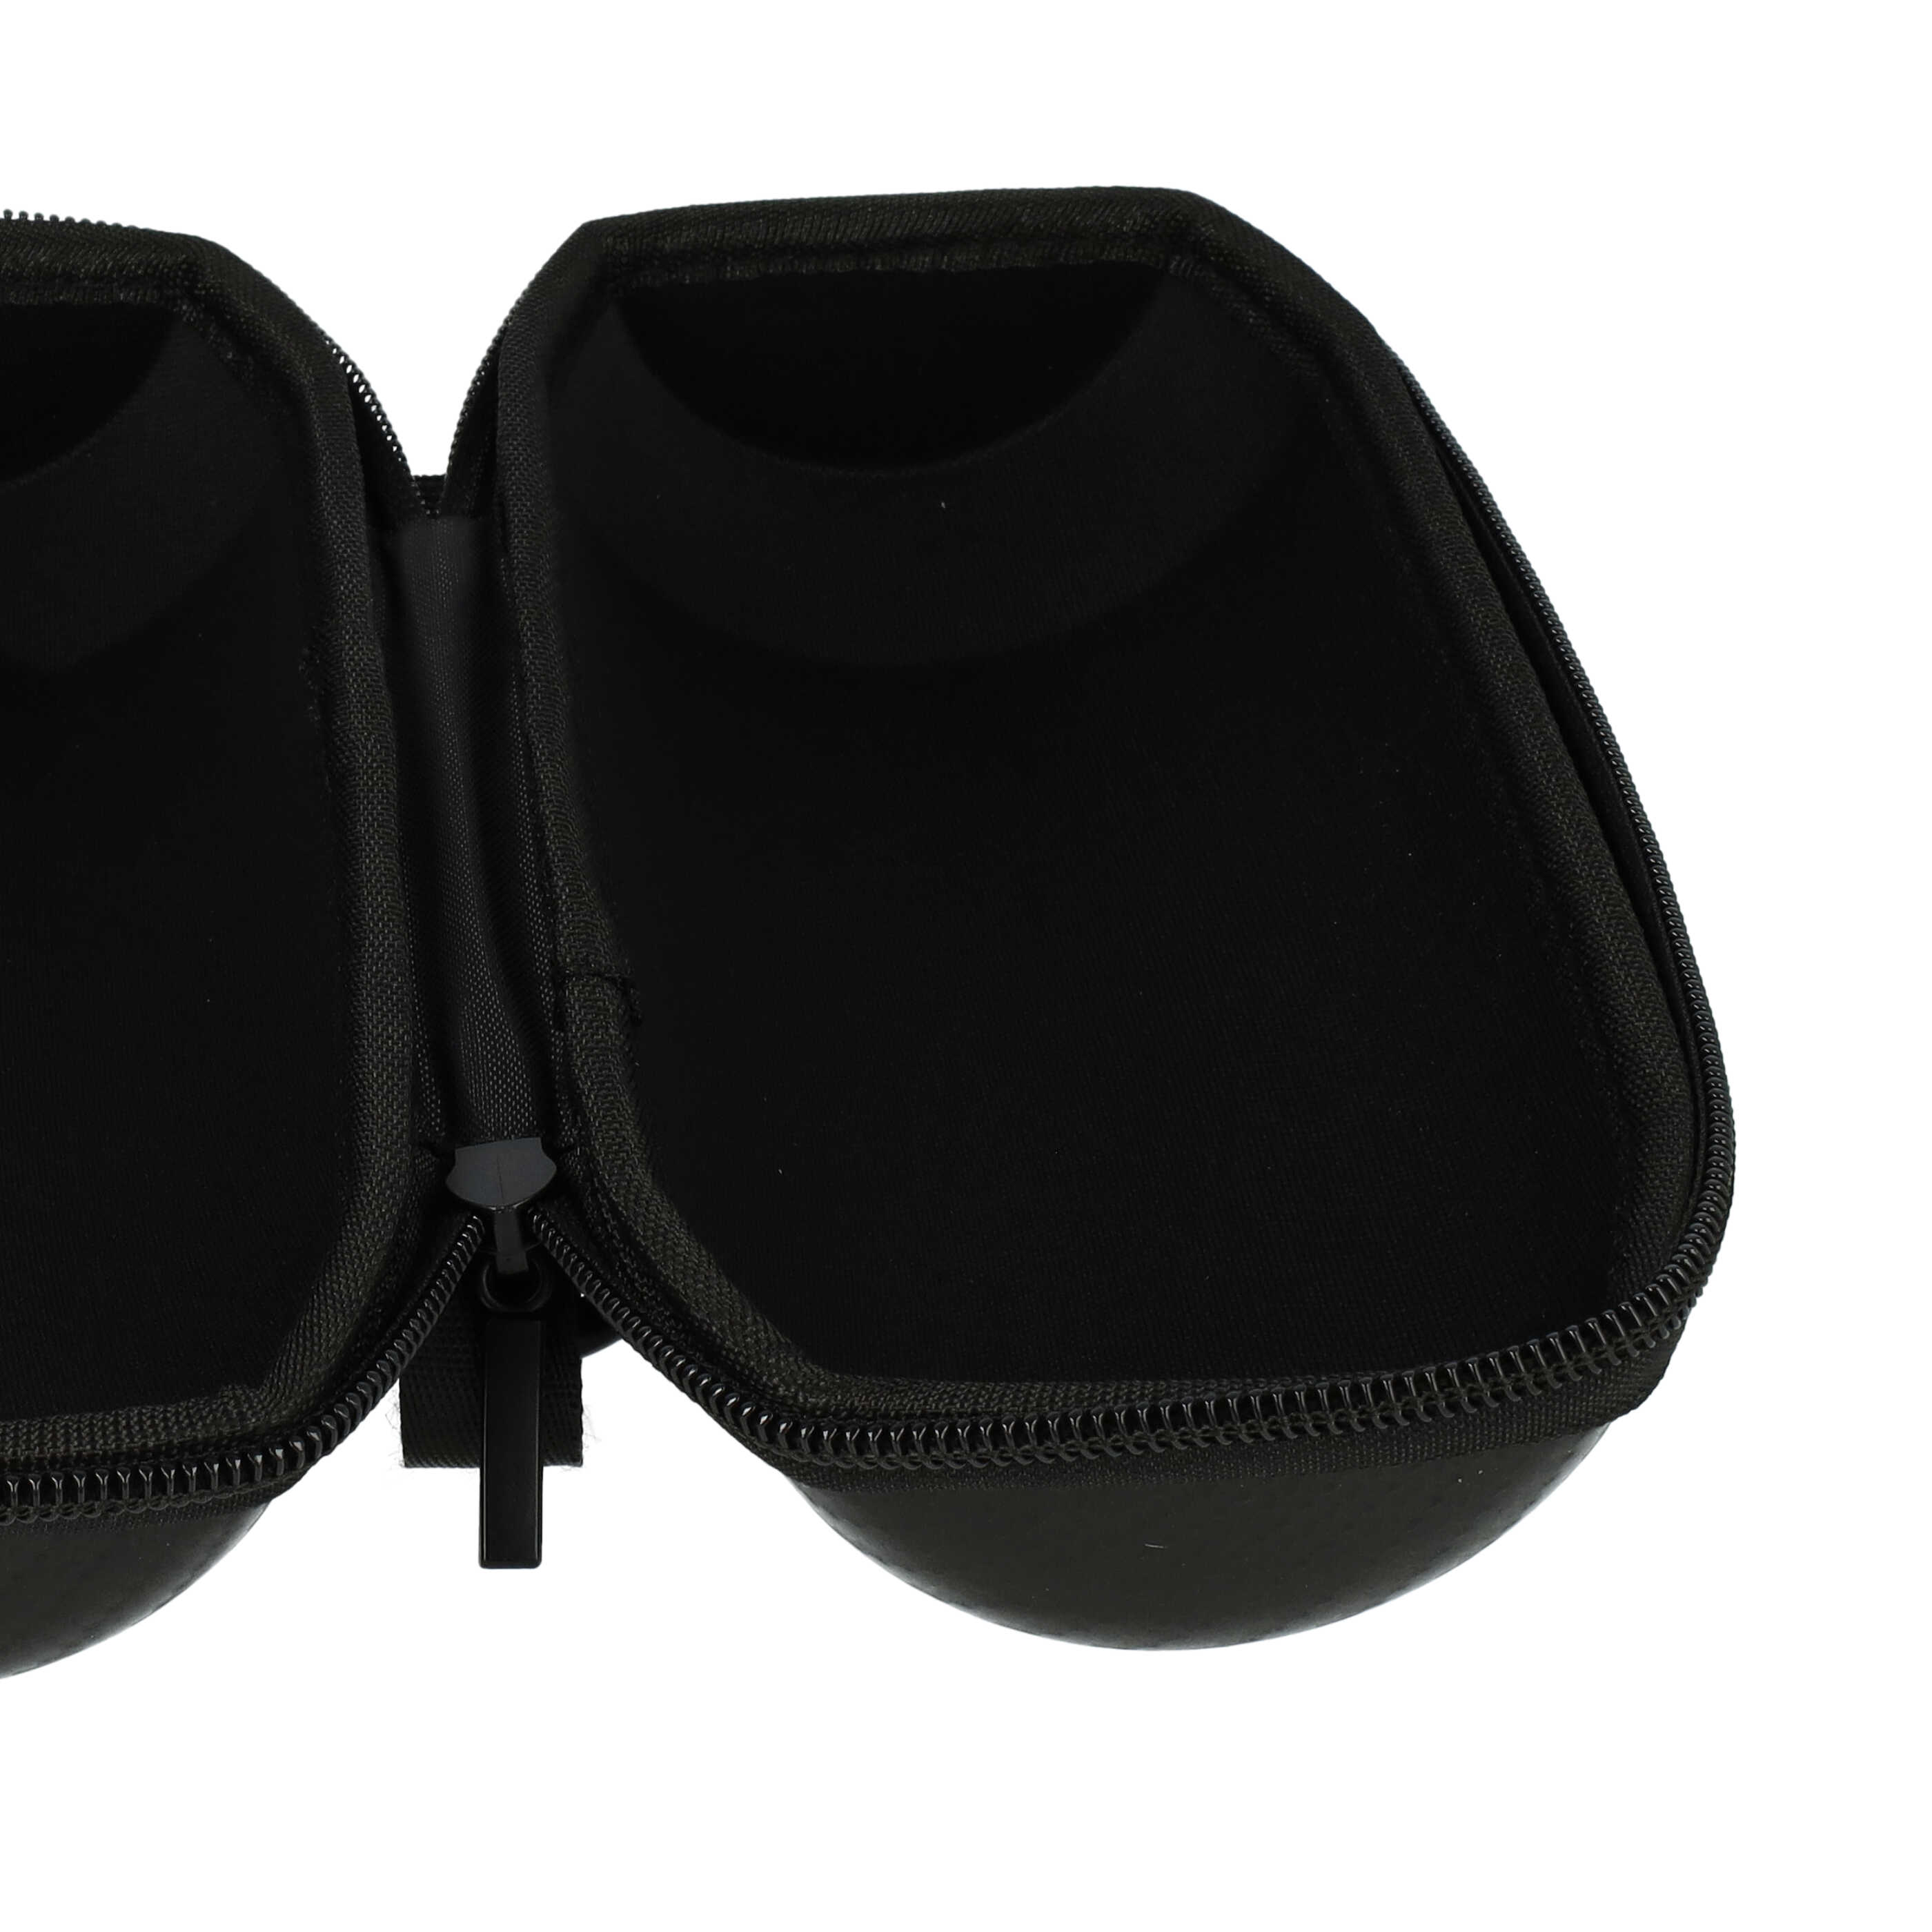 Tasche passend für Bose Soundlink Revolve Lautsprecher - Schaumstoff, Schwarz, Rot